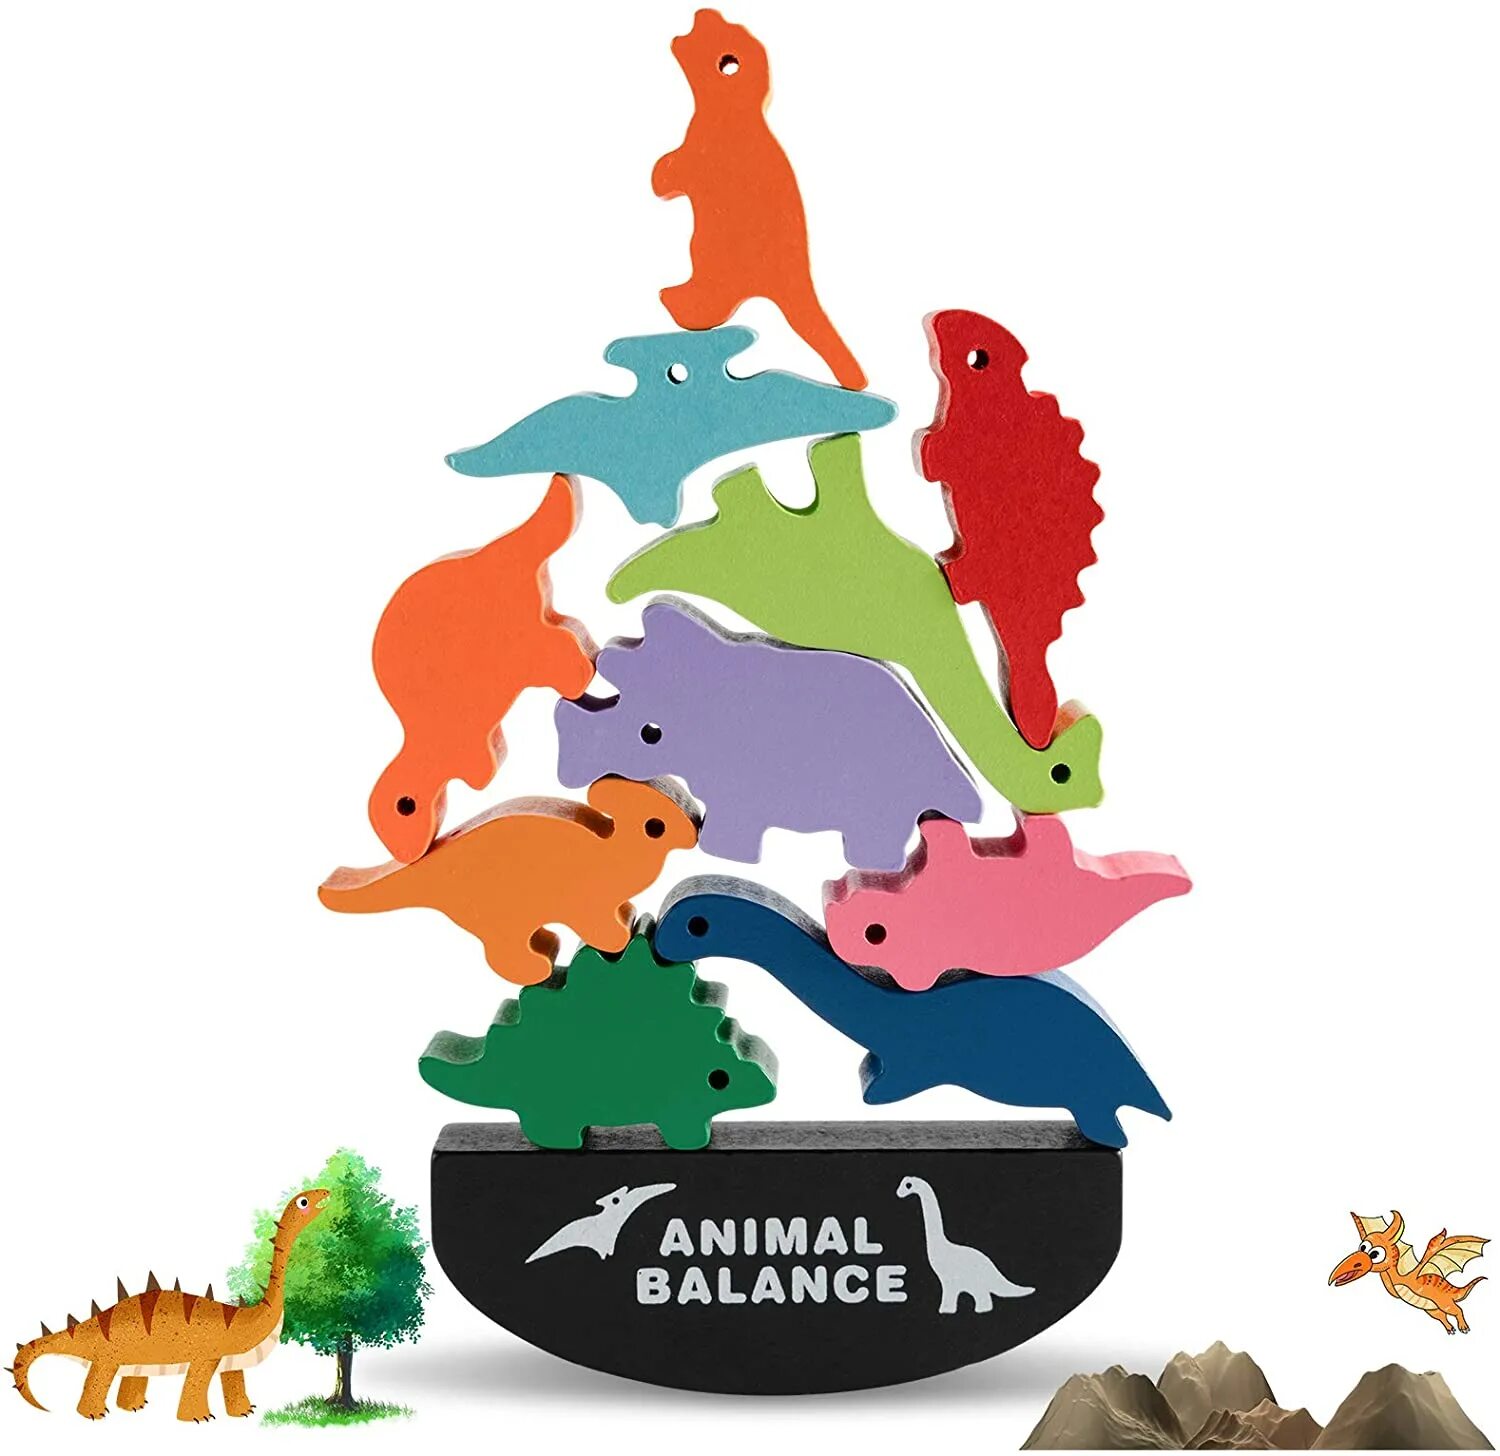 Animal balance